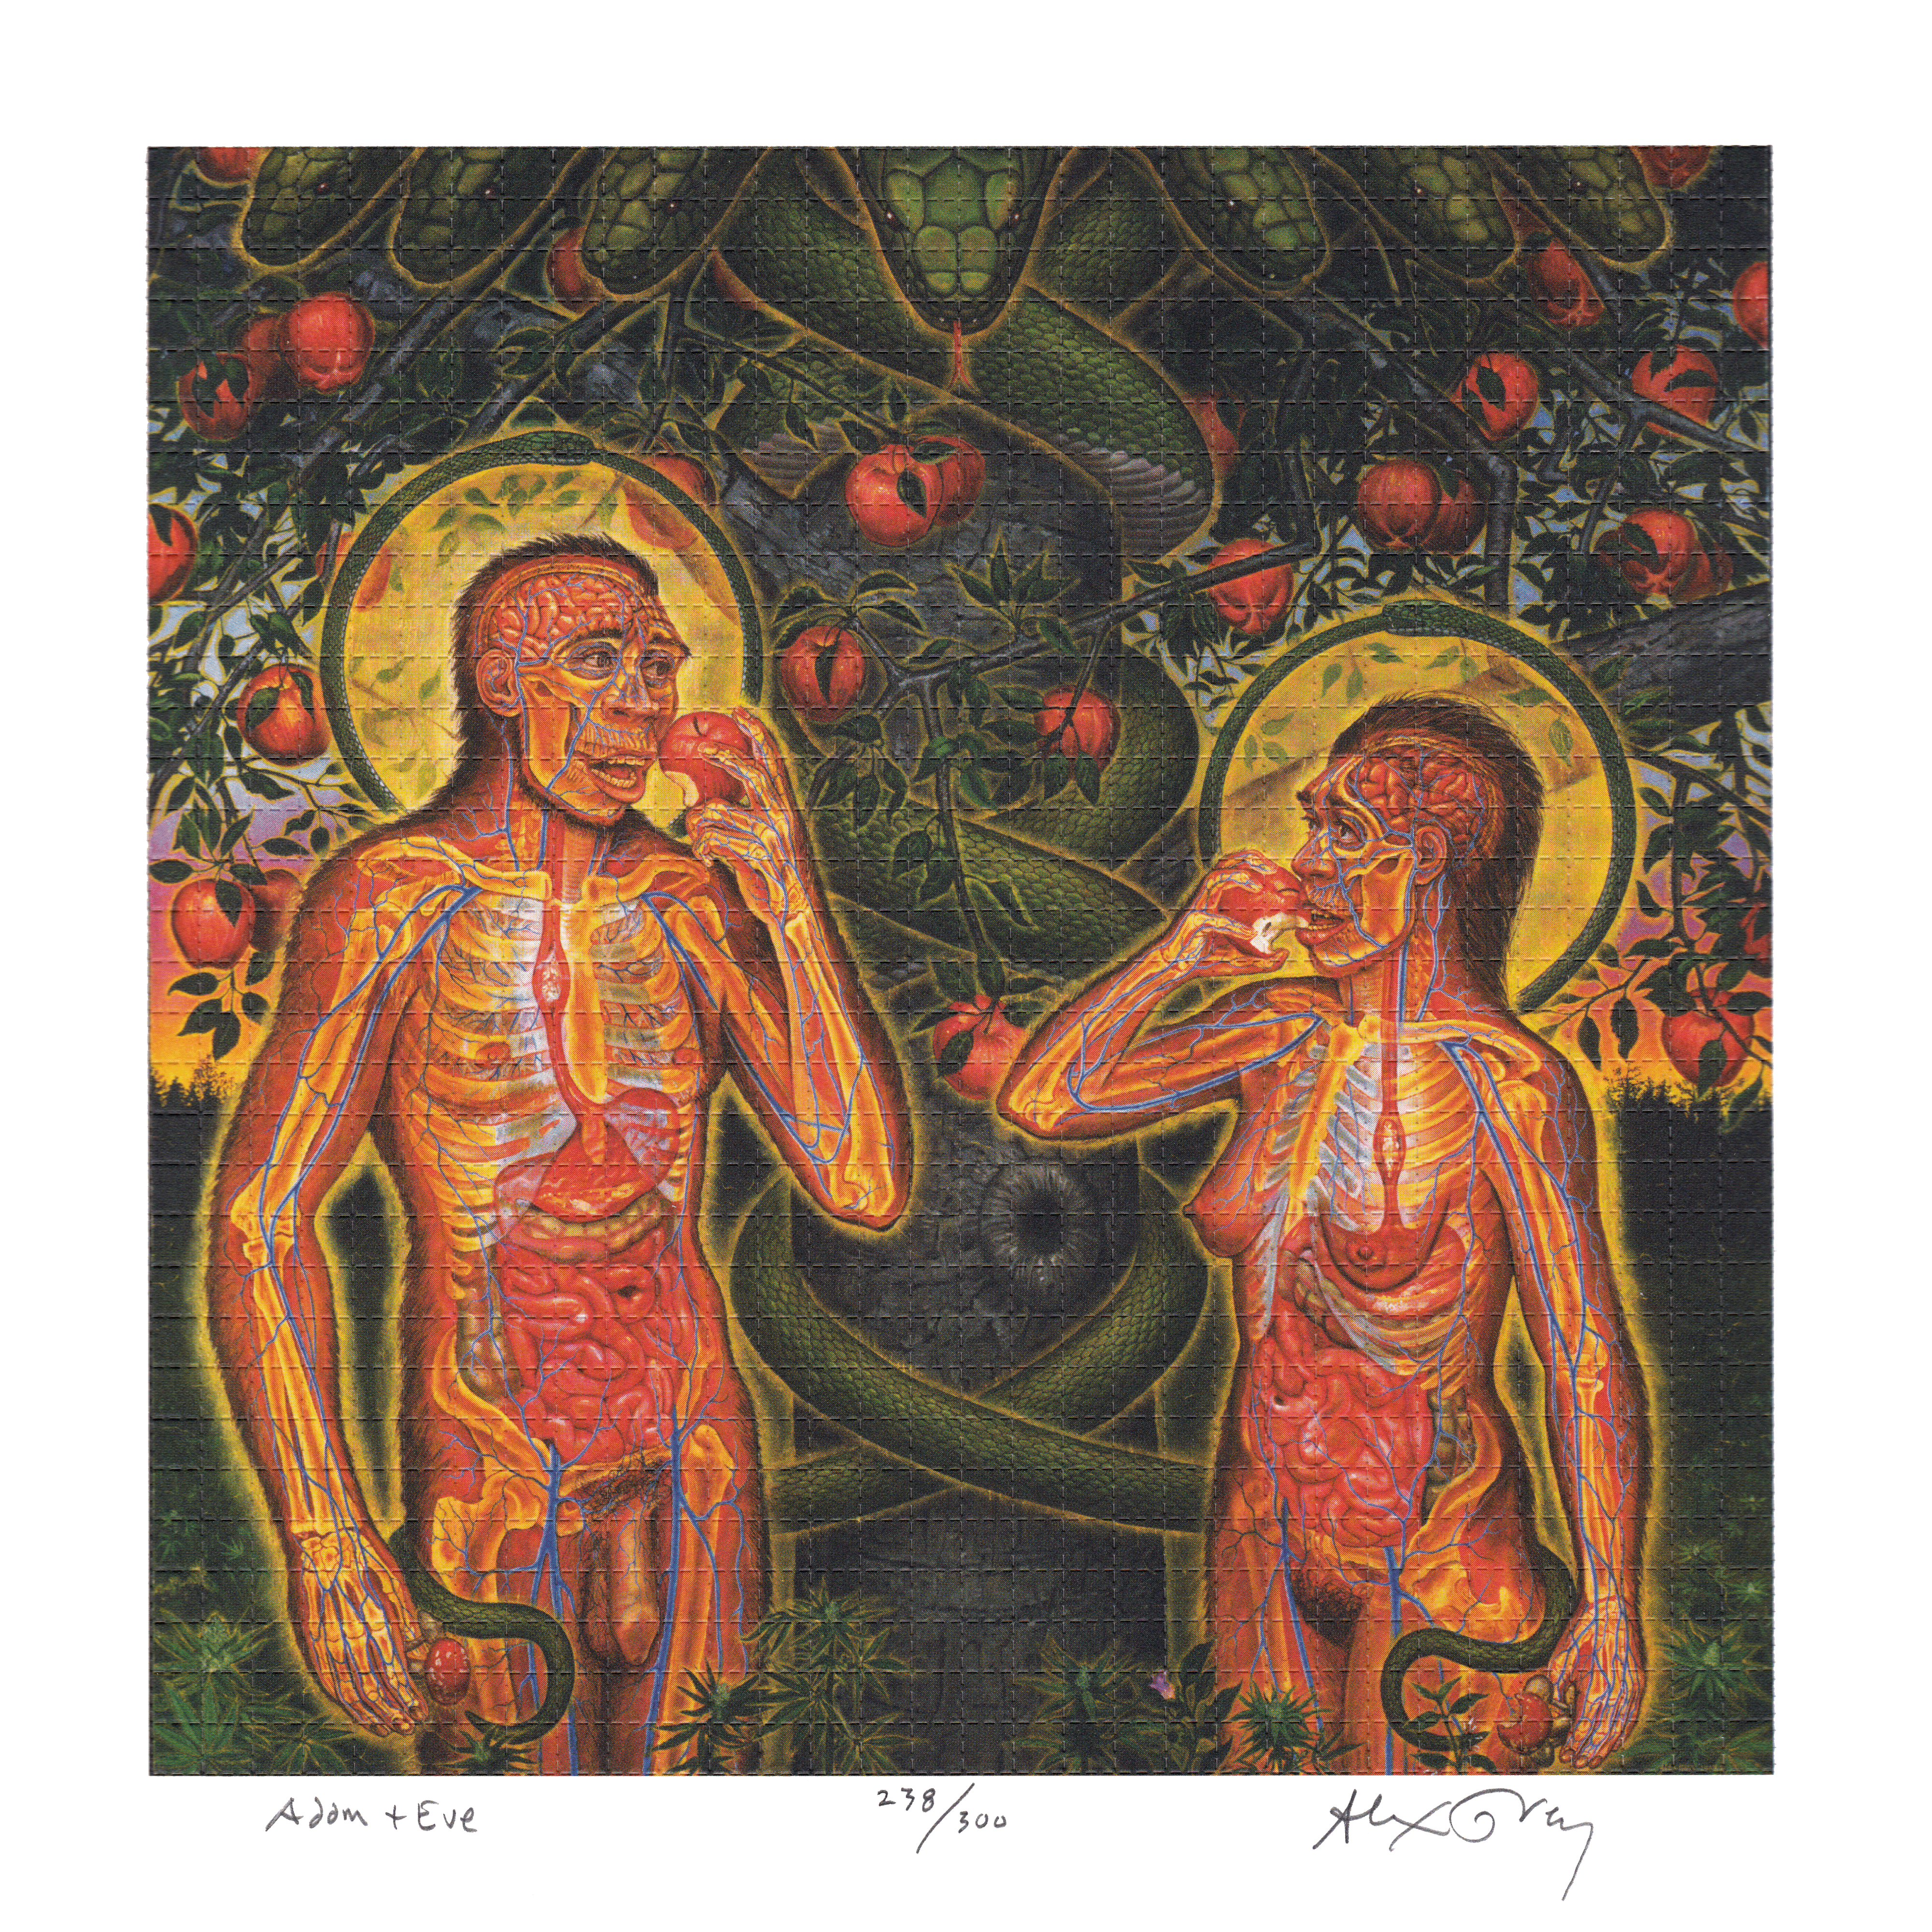 Adam & Eve by Alex Grey as LSD Blotter Art #238/300